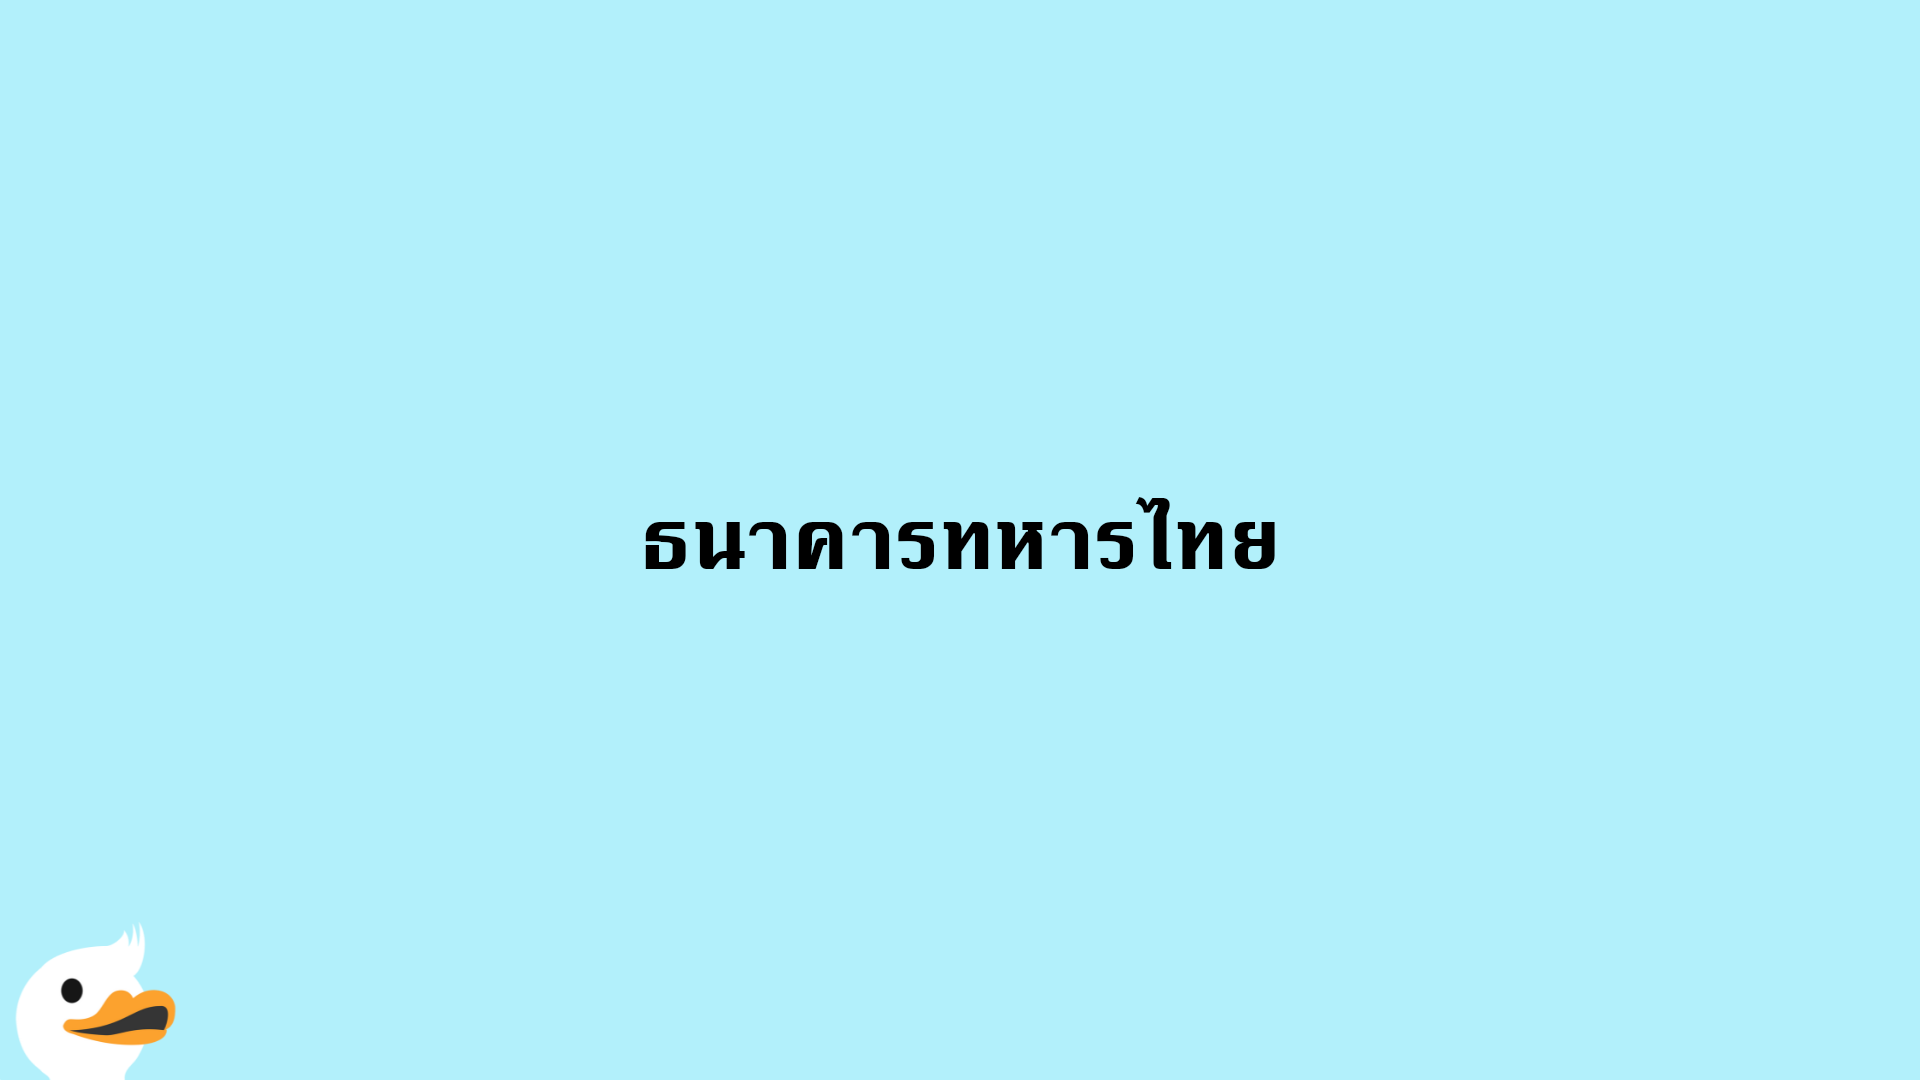 ธนาคารทหารไทย